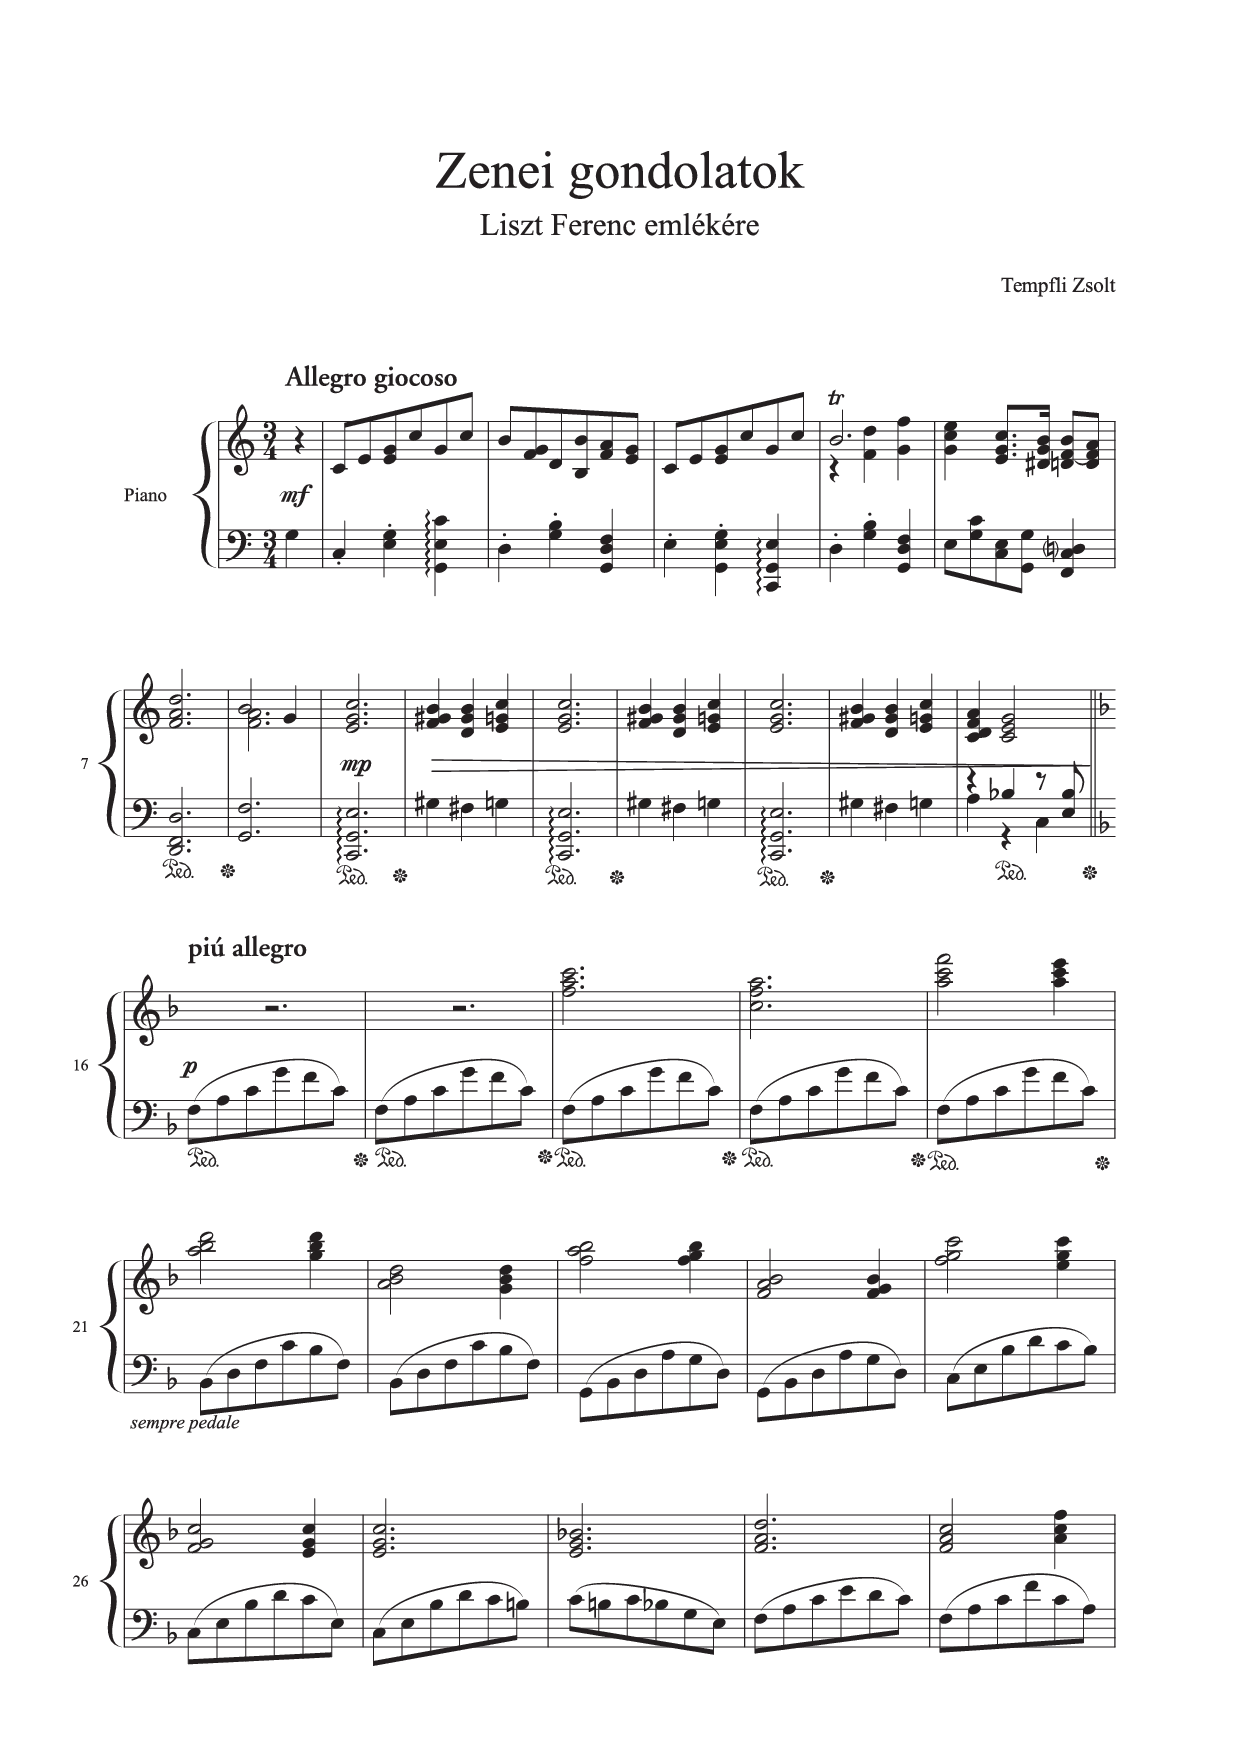 Zsolt Tempfli: Gânduri muzicale în memoria lui Franz Liszt (op. 10) pentru pian